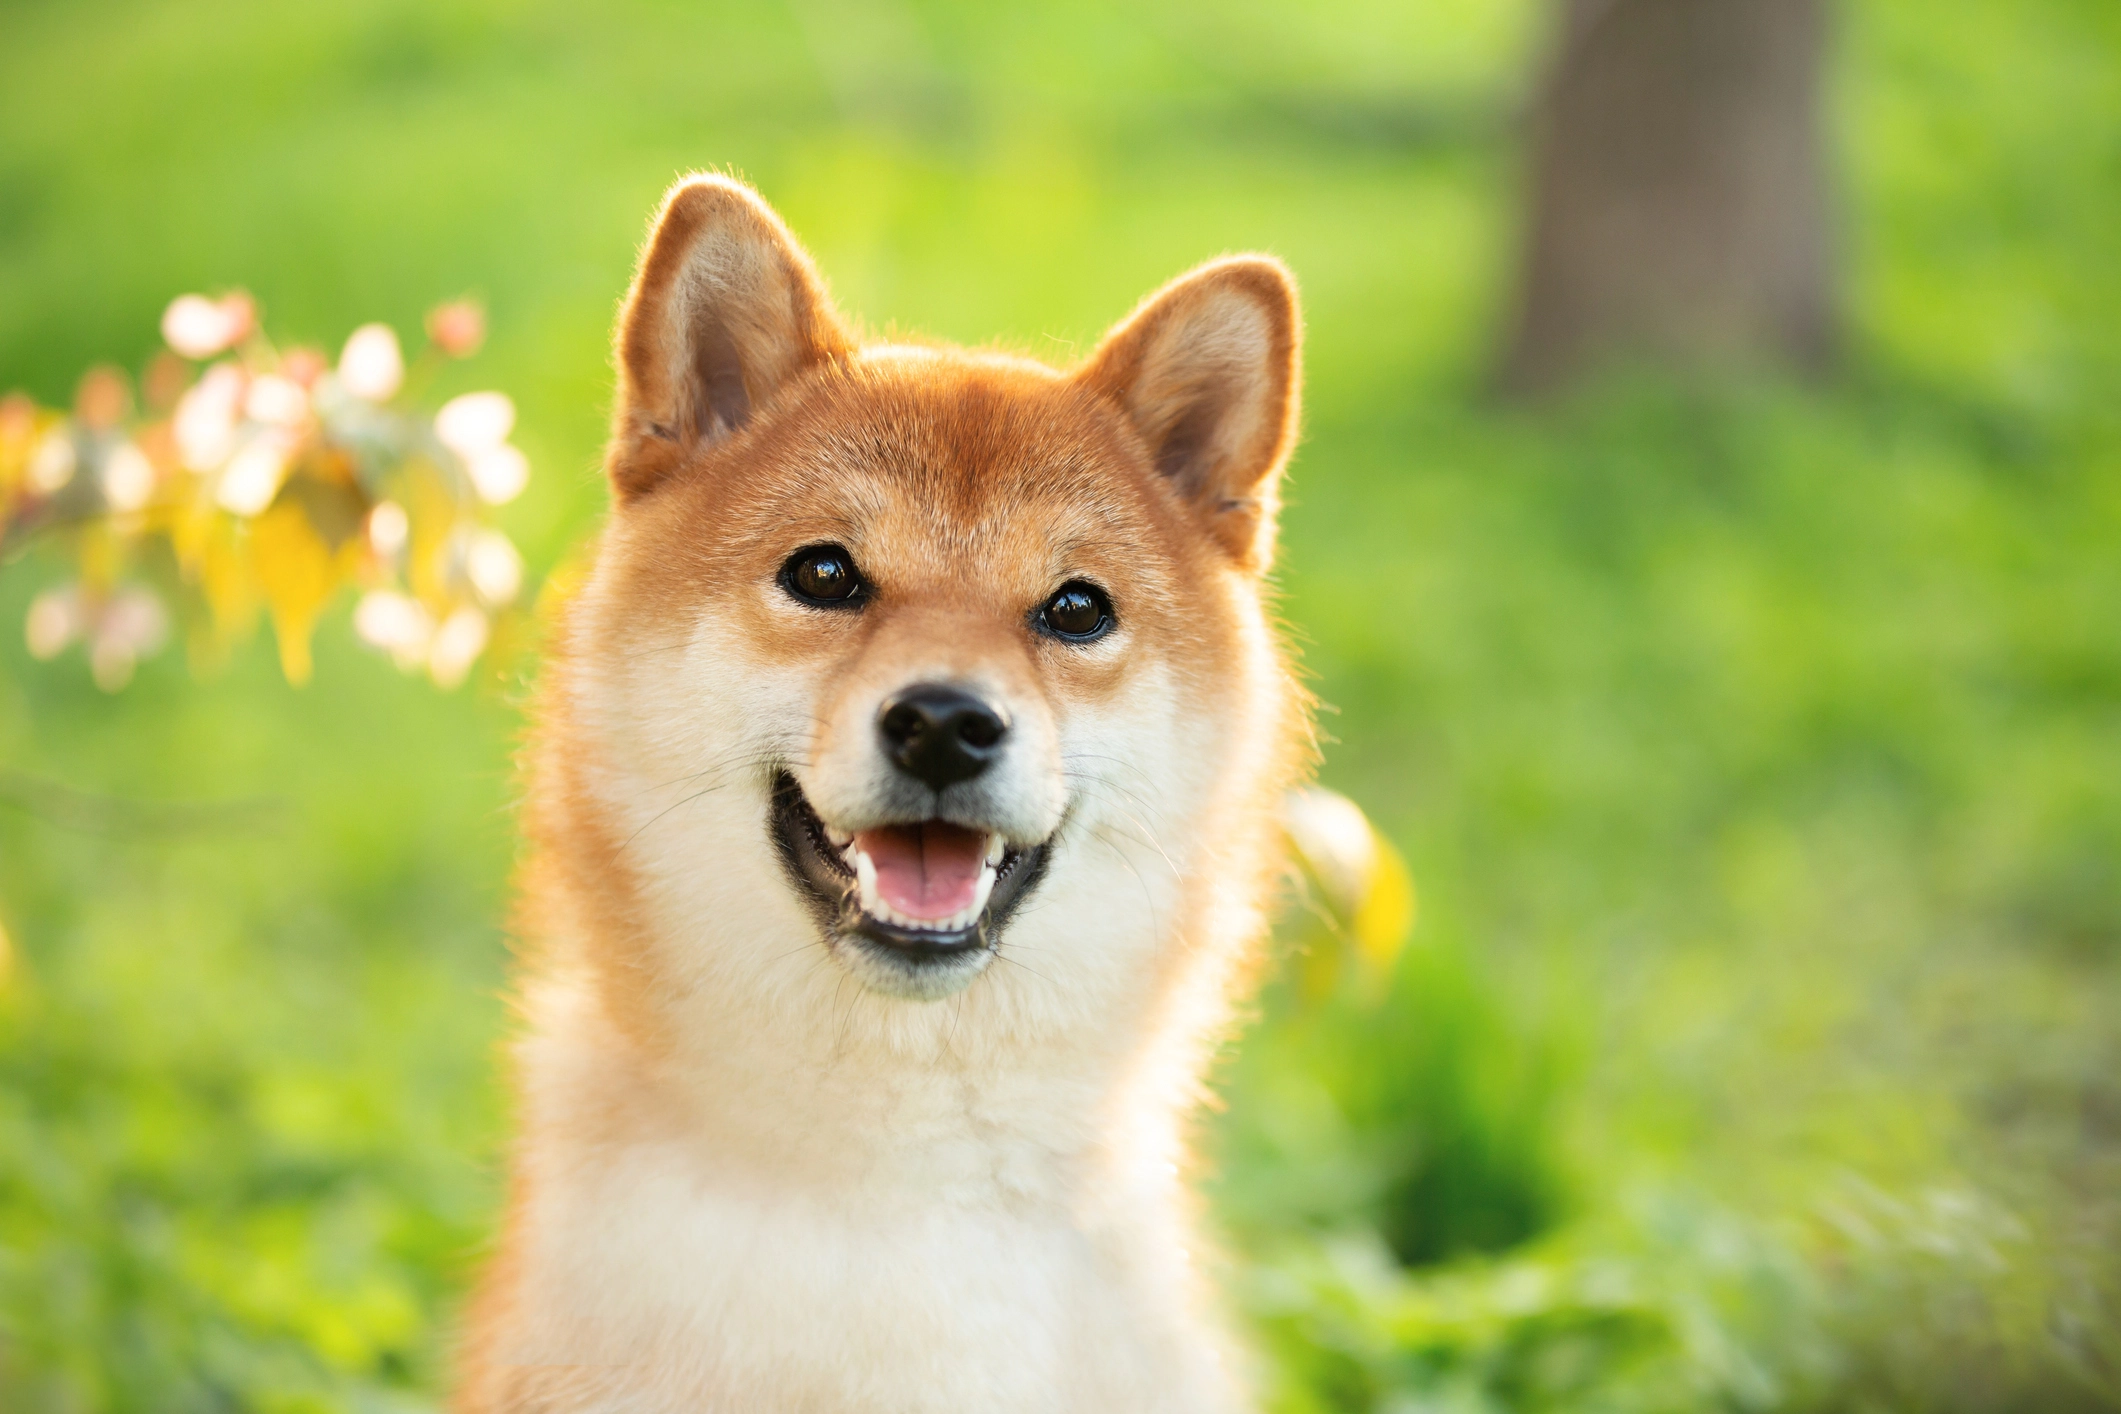 Il prezzo di Shiba Inu esplode del 17% raggiungendo nuovi obiettivi - dog looking at camera with its mouth open